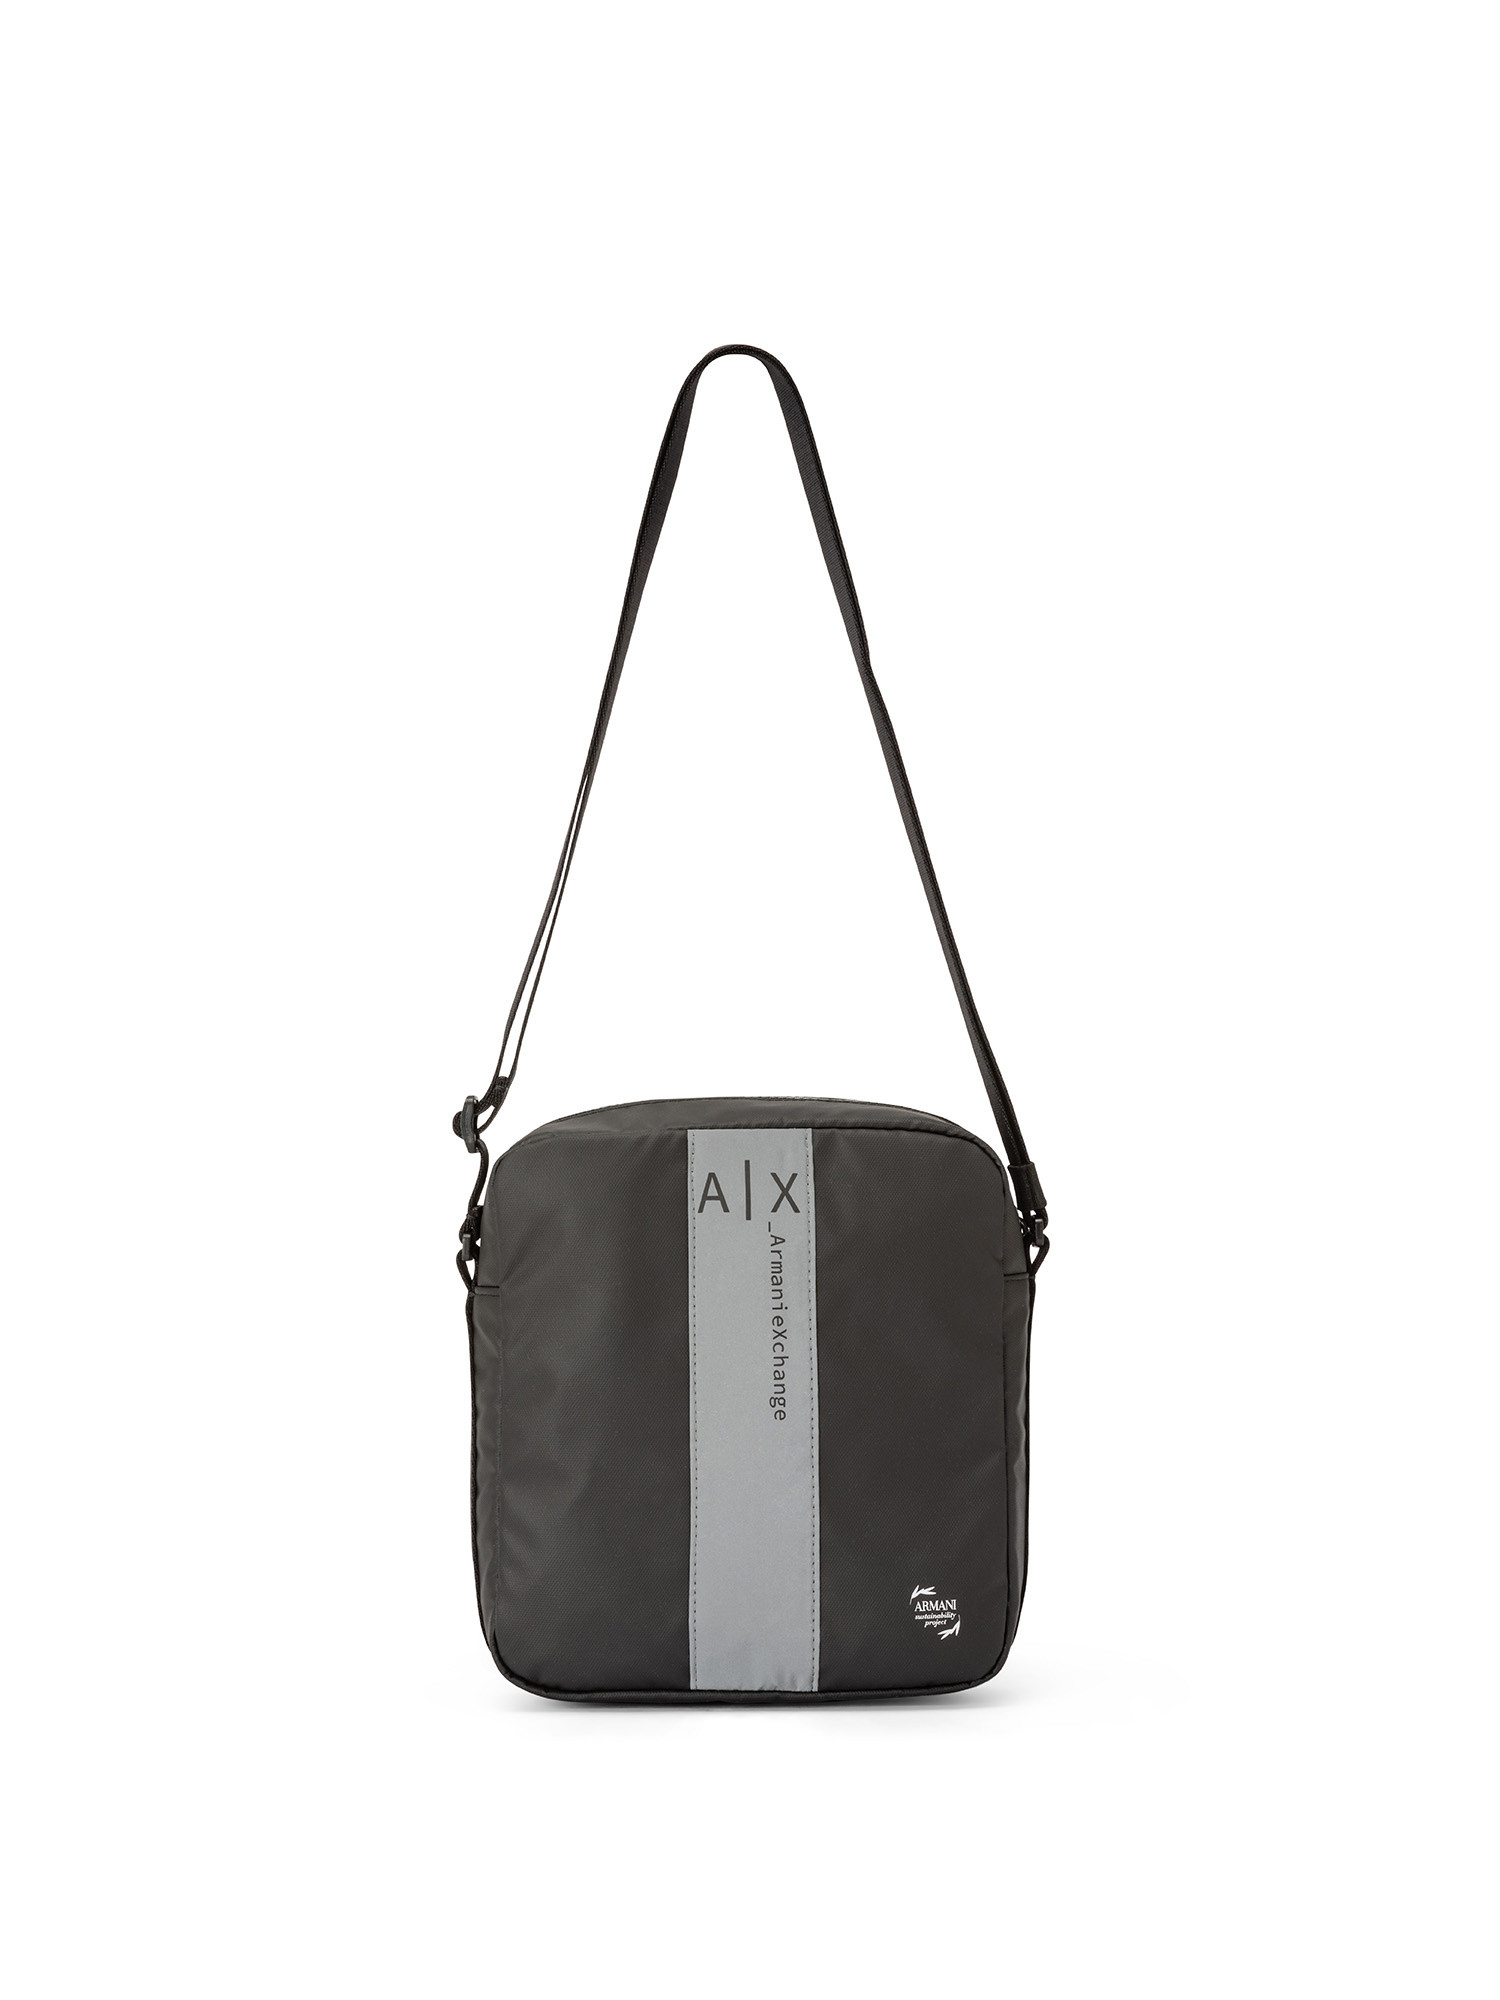 Armani Exchange - Shoulder bag with logo, Black, large image number 0